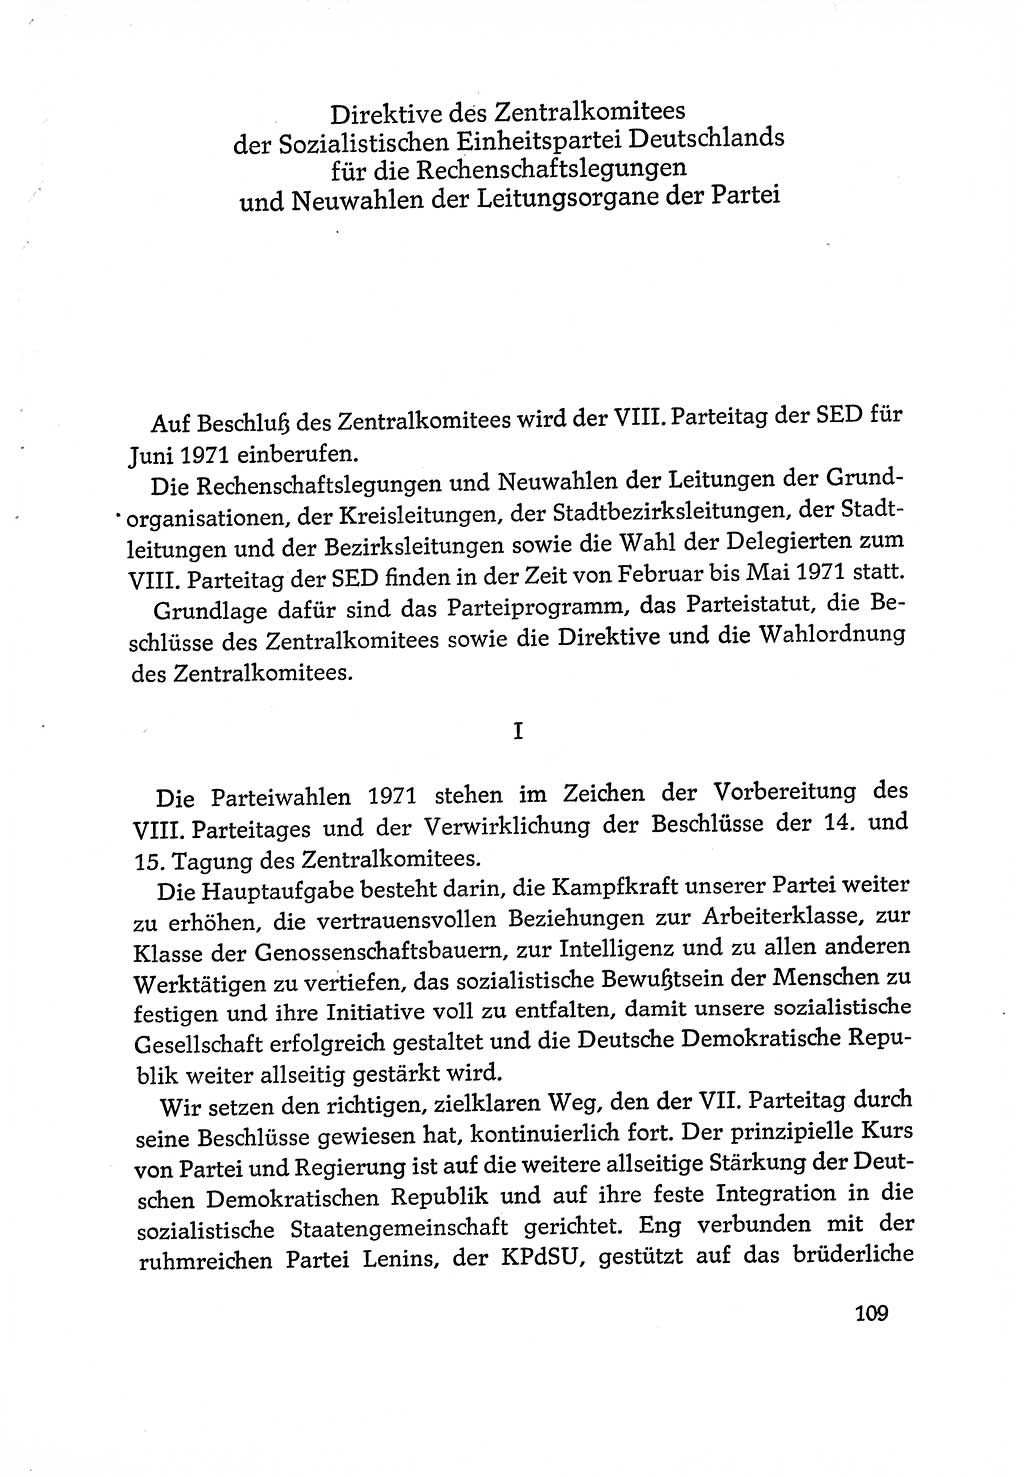 Dokumente der Sozialistischen Einheitspartei Deutschlands (SED) [Deutsche Demokratische Republik (DDR)] 1970-1971, Seite 109 (Dok. SED DDR 1970-1971, S. 109)